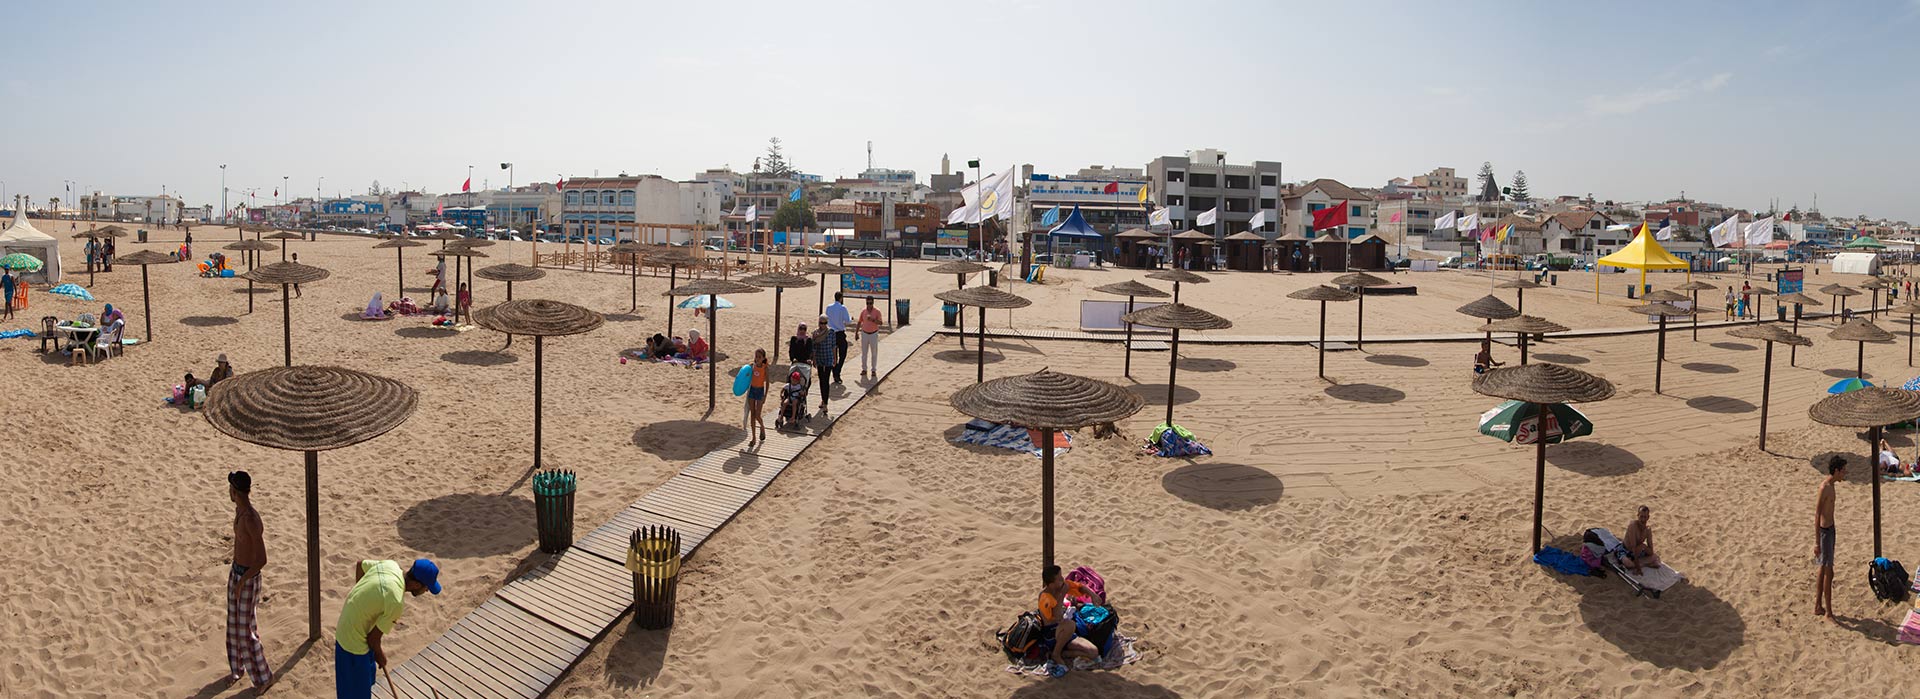 La Fondation Mohammed VI pour la Protection de l’Environnement organise en partenariat avec la Direction Générale des Collectivités Locales une formation pour les responsables techniques locaux chargés de la gestion des plages du royaume